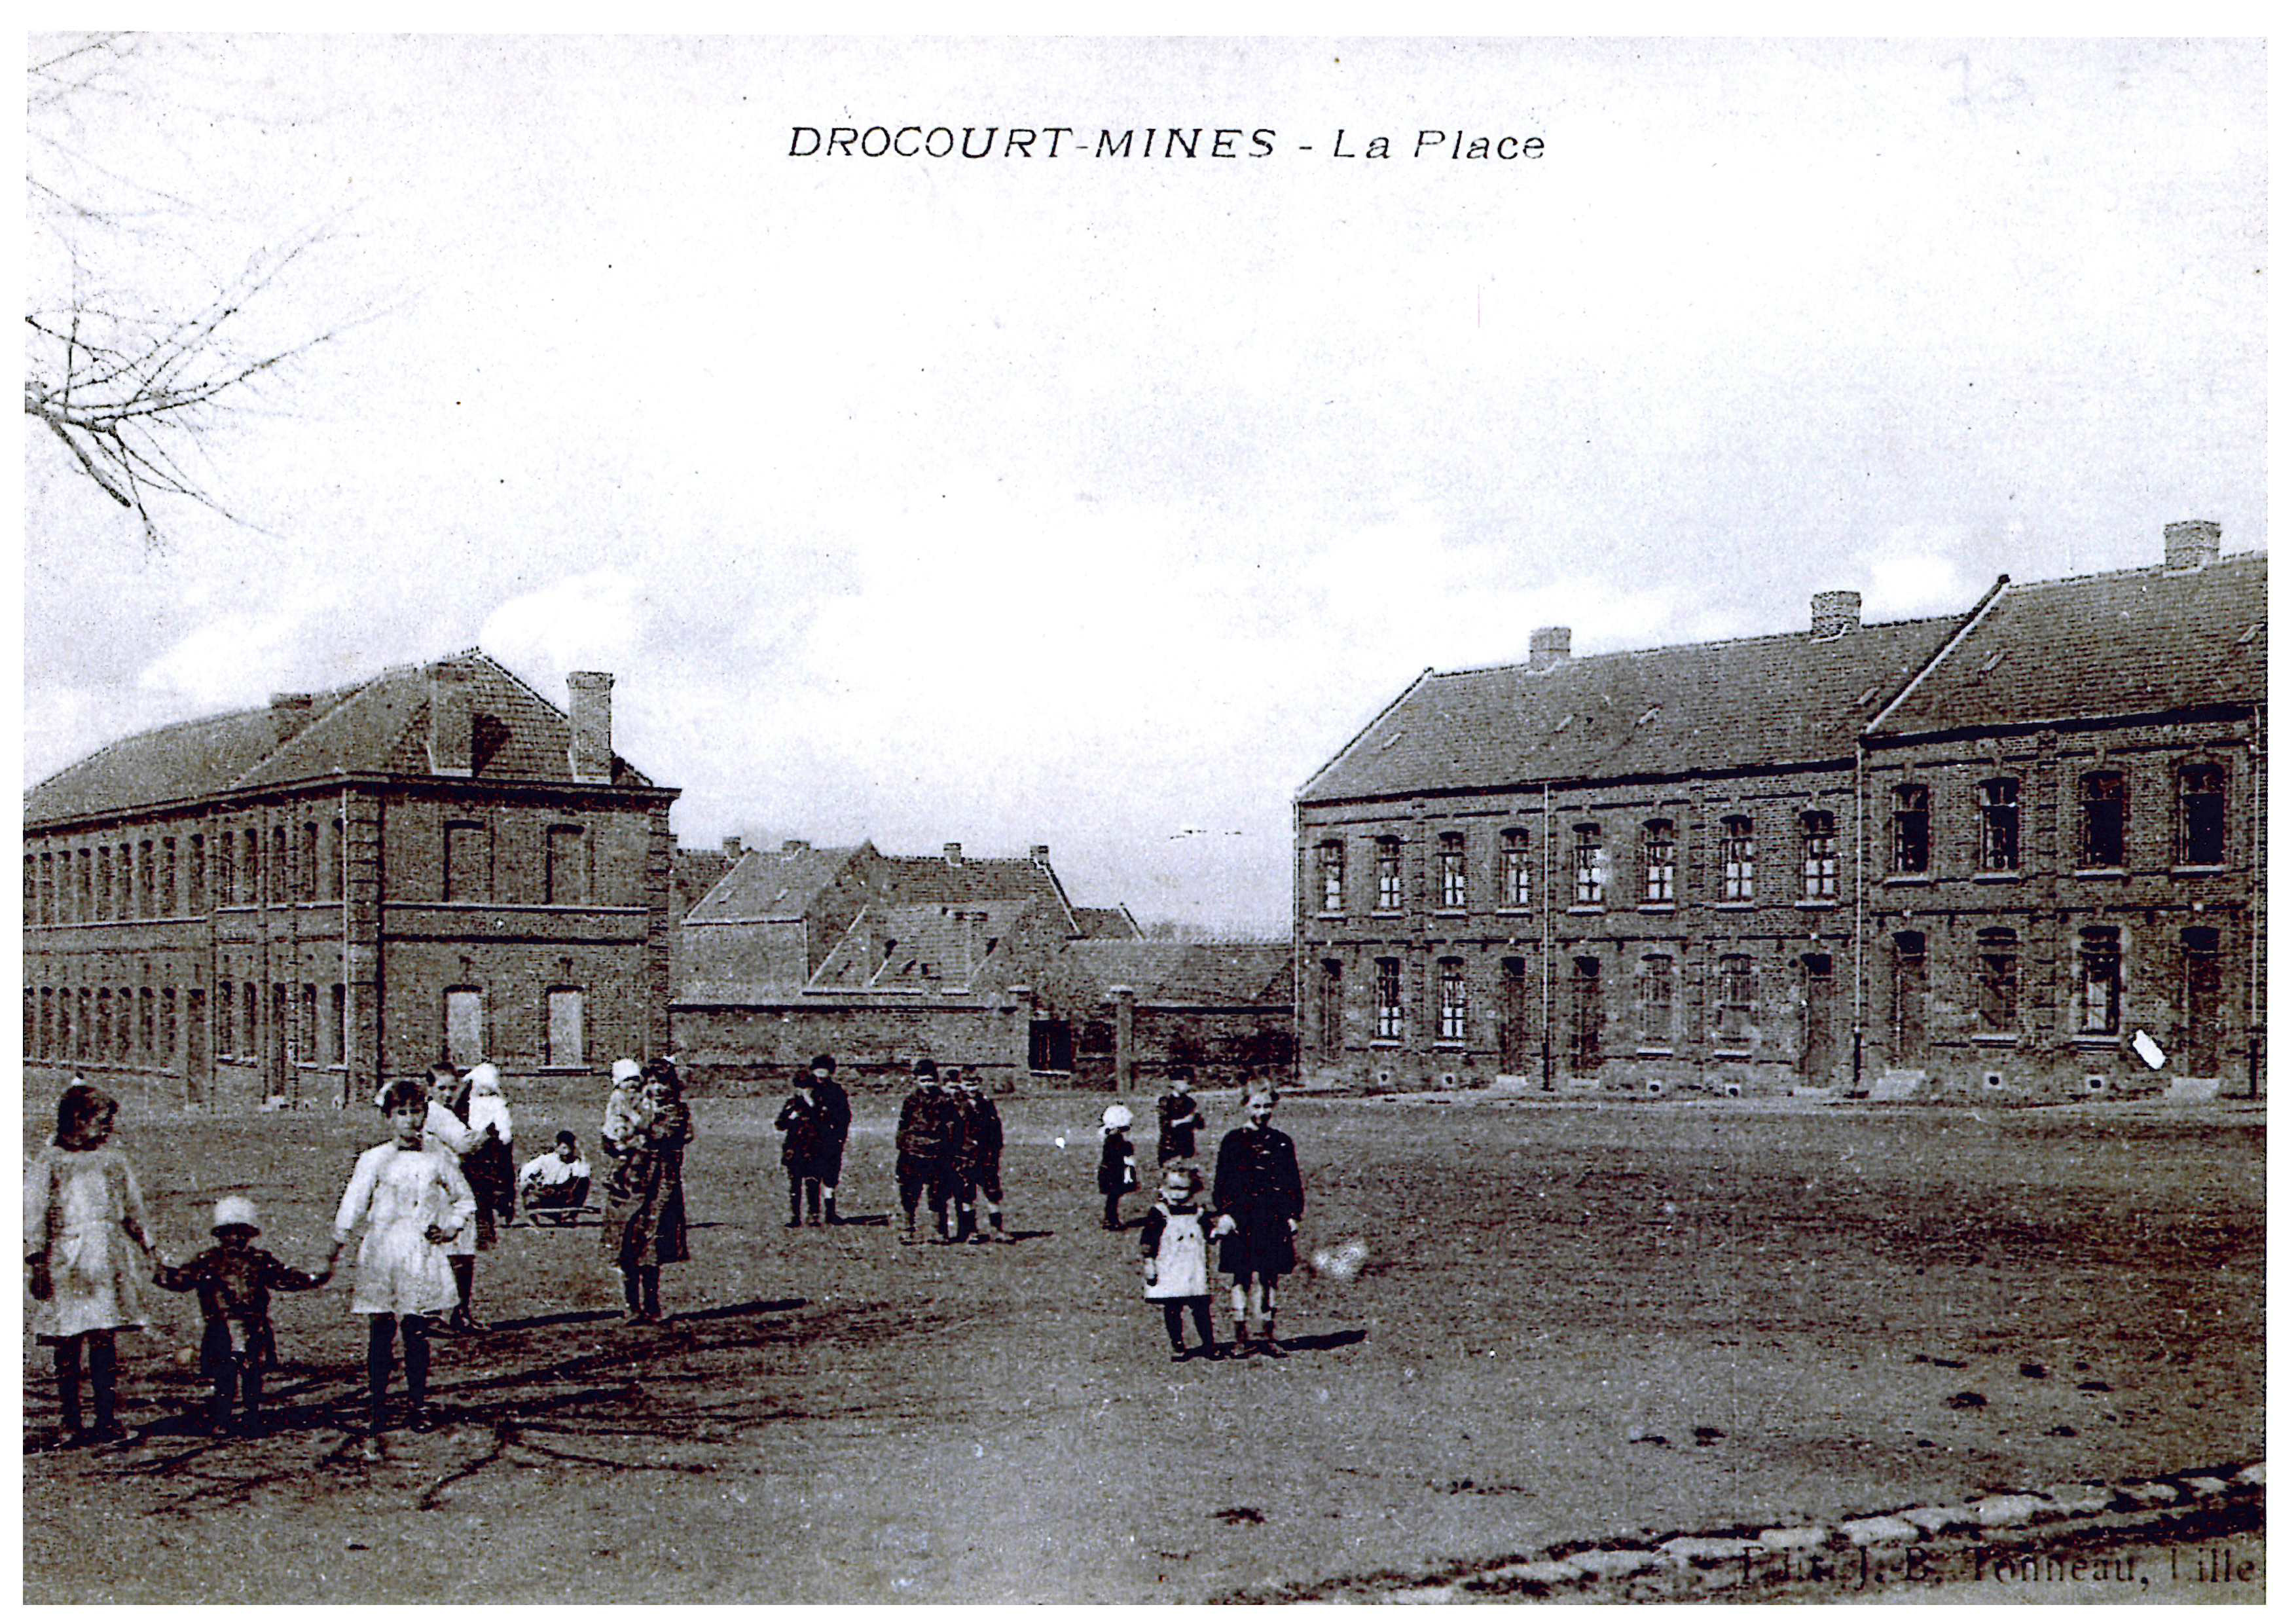 AV-Drocourt Mines - La Place 2.jpg